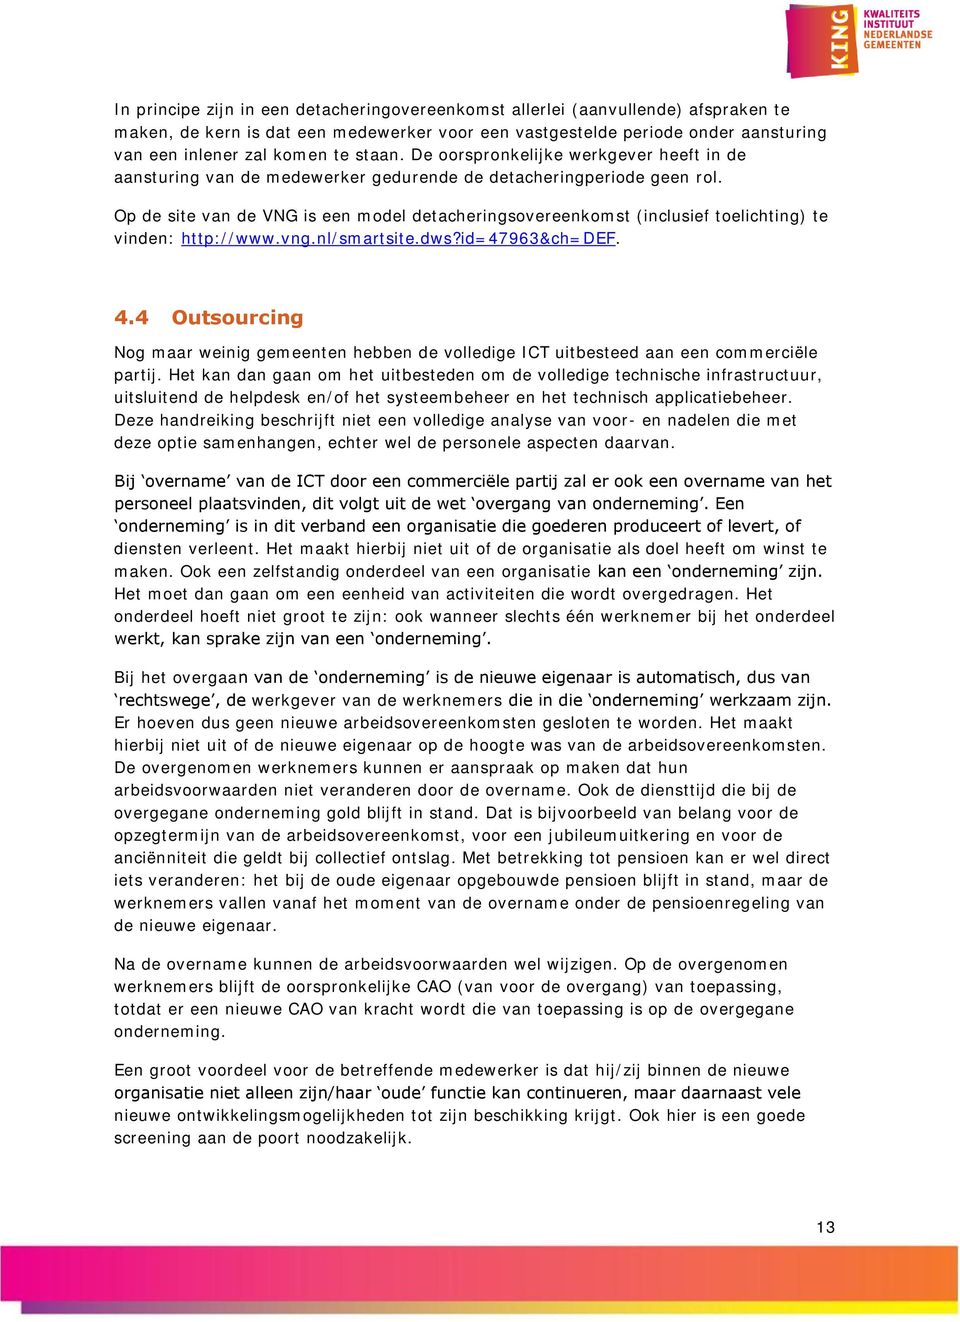 Op de site van de VNG is een model detacheringsovereenkomst (inclusief toelichting) te vinden: http://www.vng.nl/smartsite.dws?id=47963&ch=def. 4.